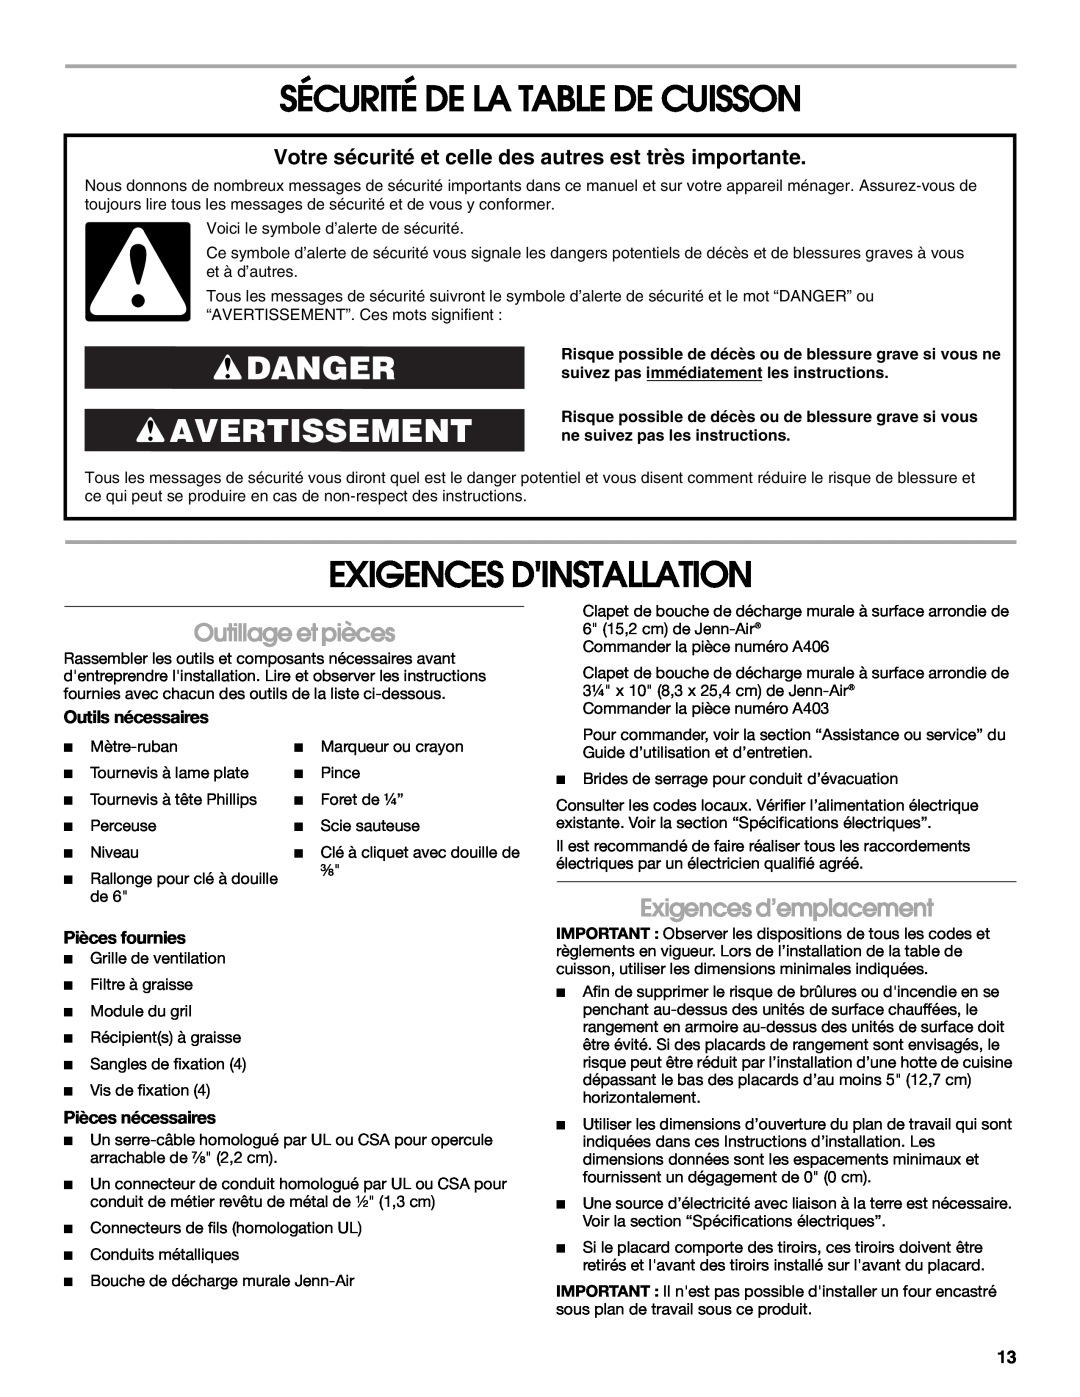 Jenn-Air W10298937B Sécurité De La Table De Cuisson, Exigences Dinstallation, Danger Avertissement, Outillage et pièces 